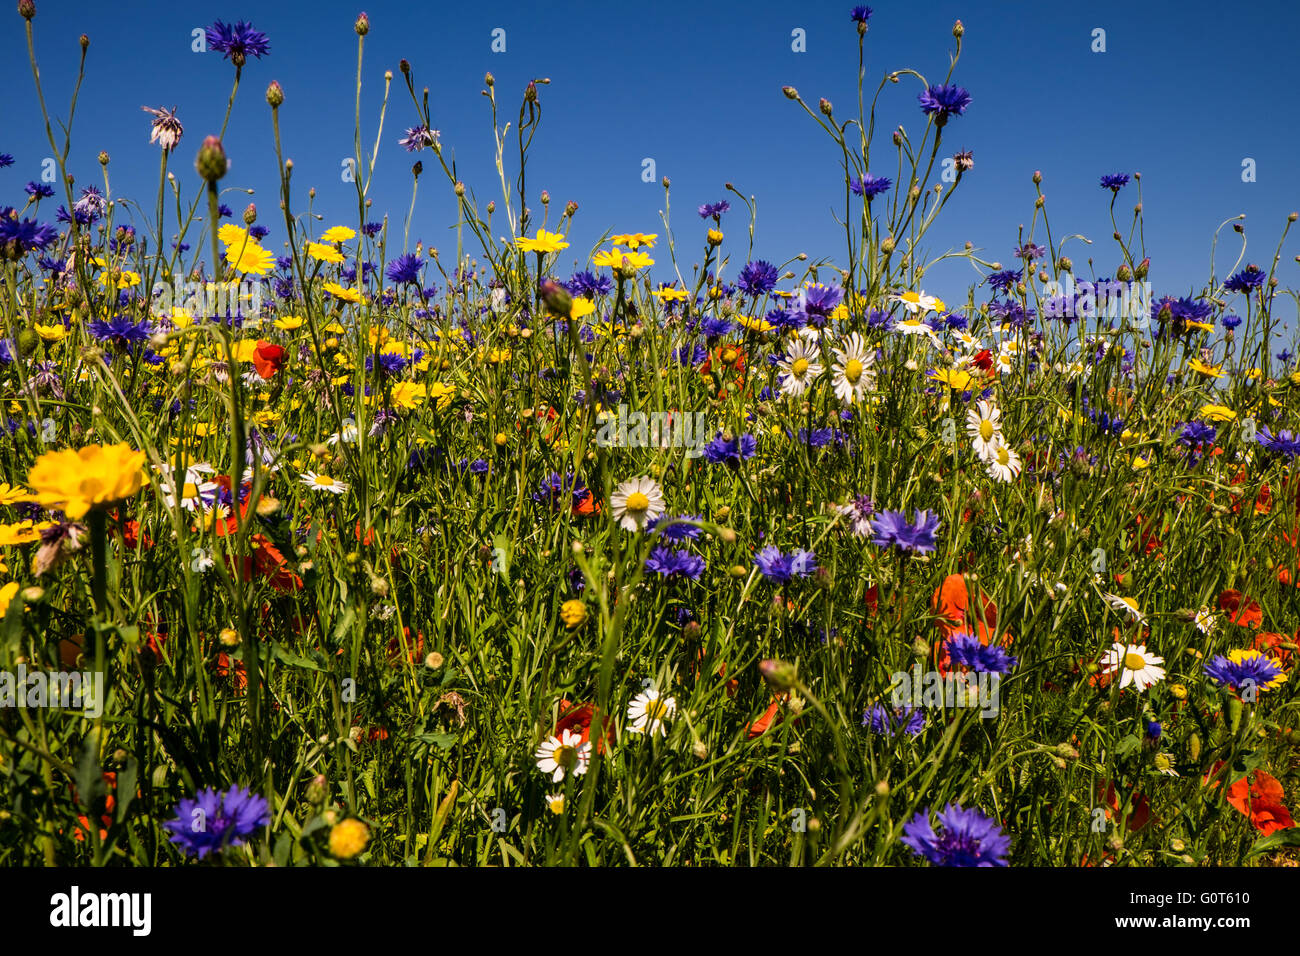 Prato di fiori selvaggi con papaveri e cornflowers sotto un cielo blu chiaro Foto Stock